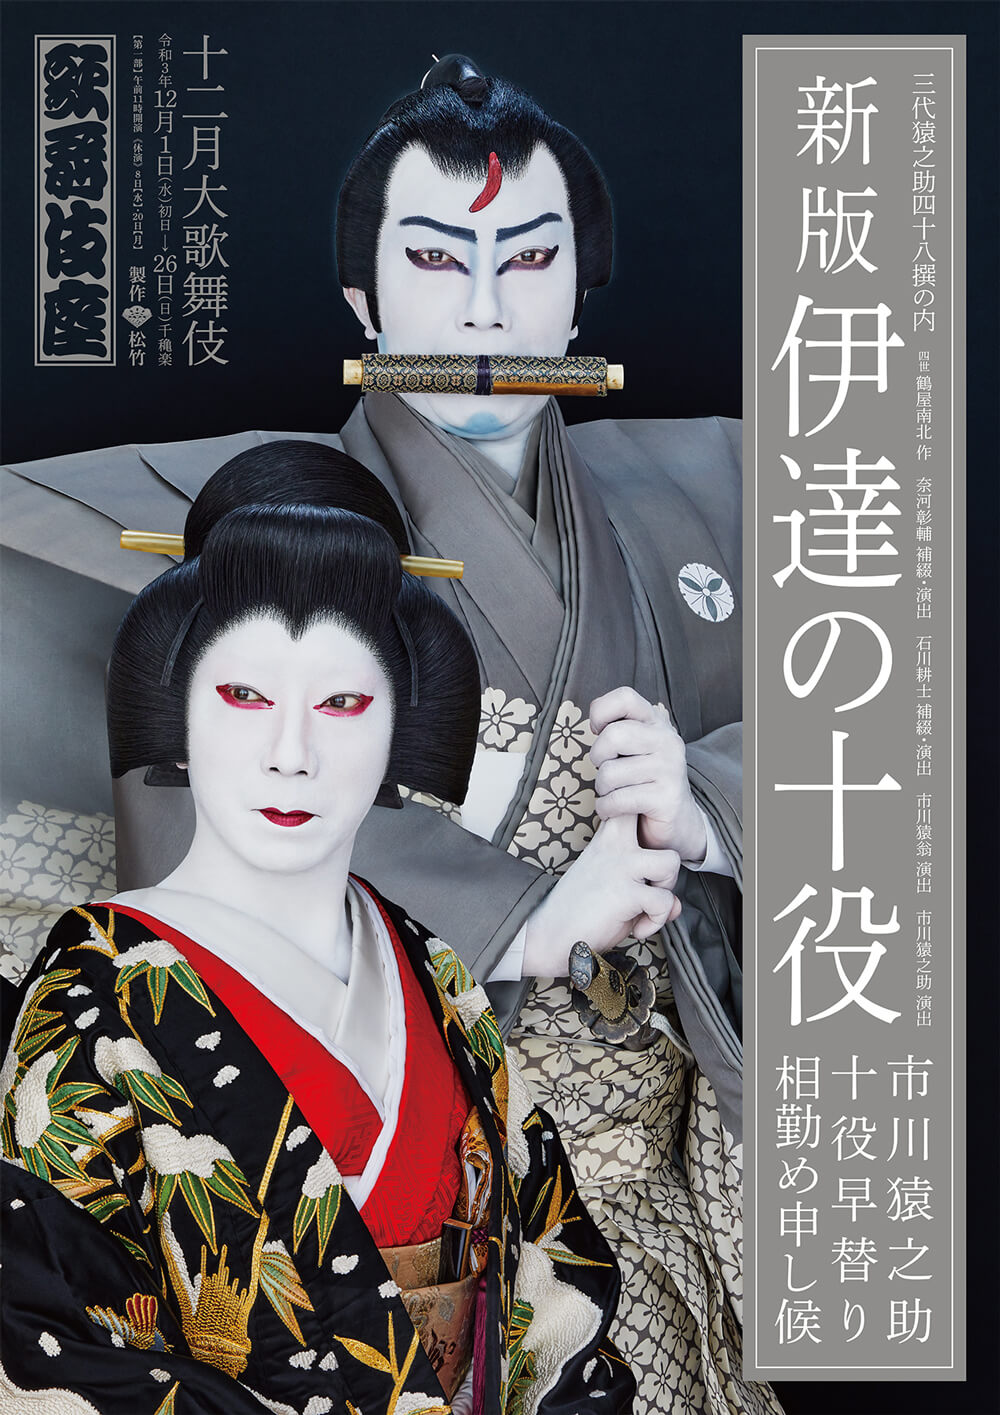 歌舞伎座『新版 伊達の十役』特別ポスター公開